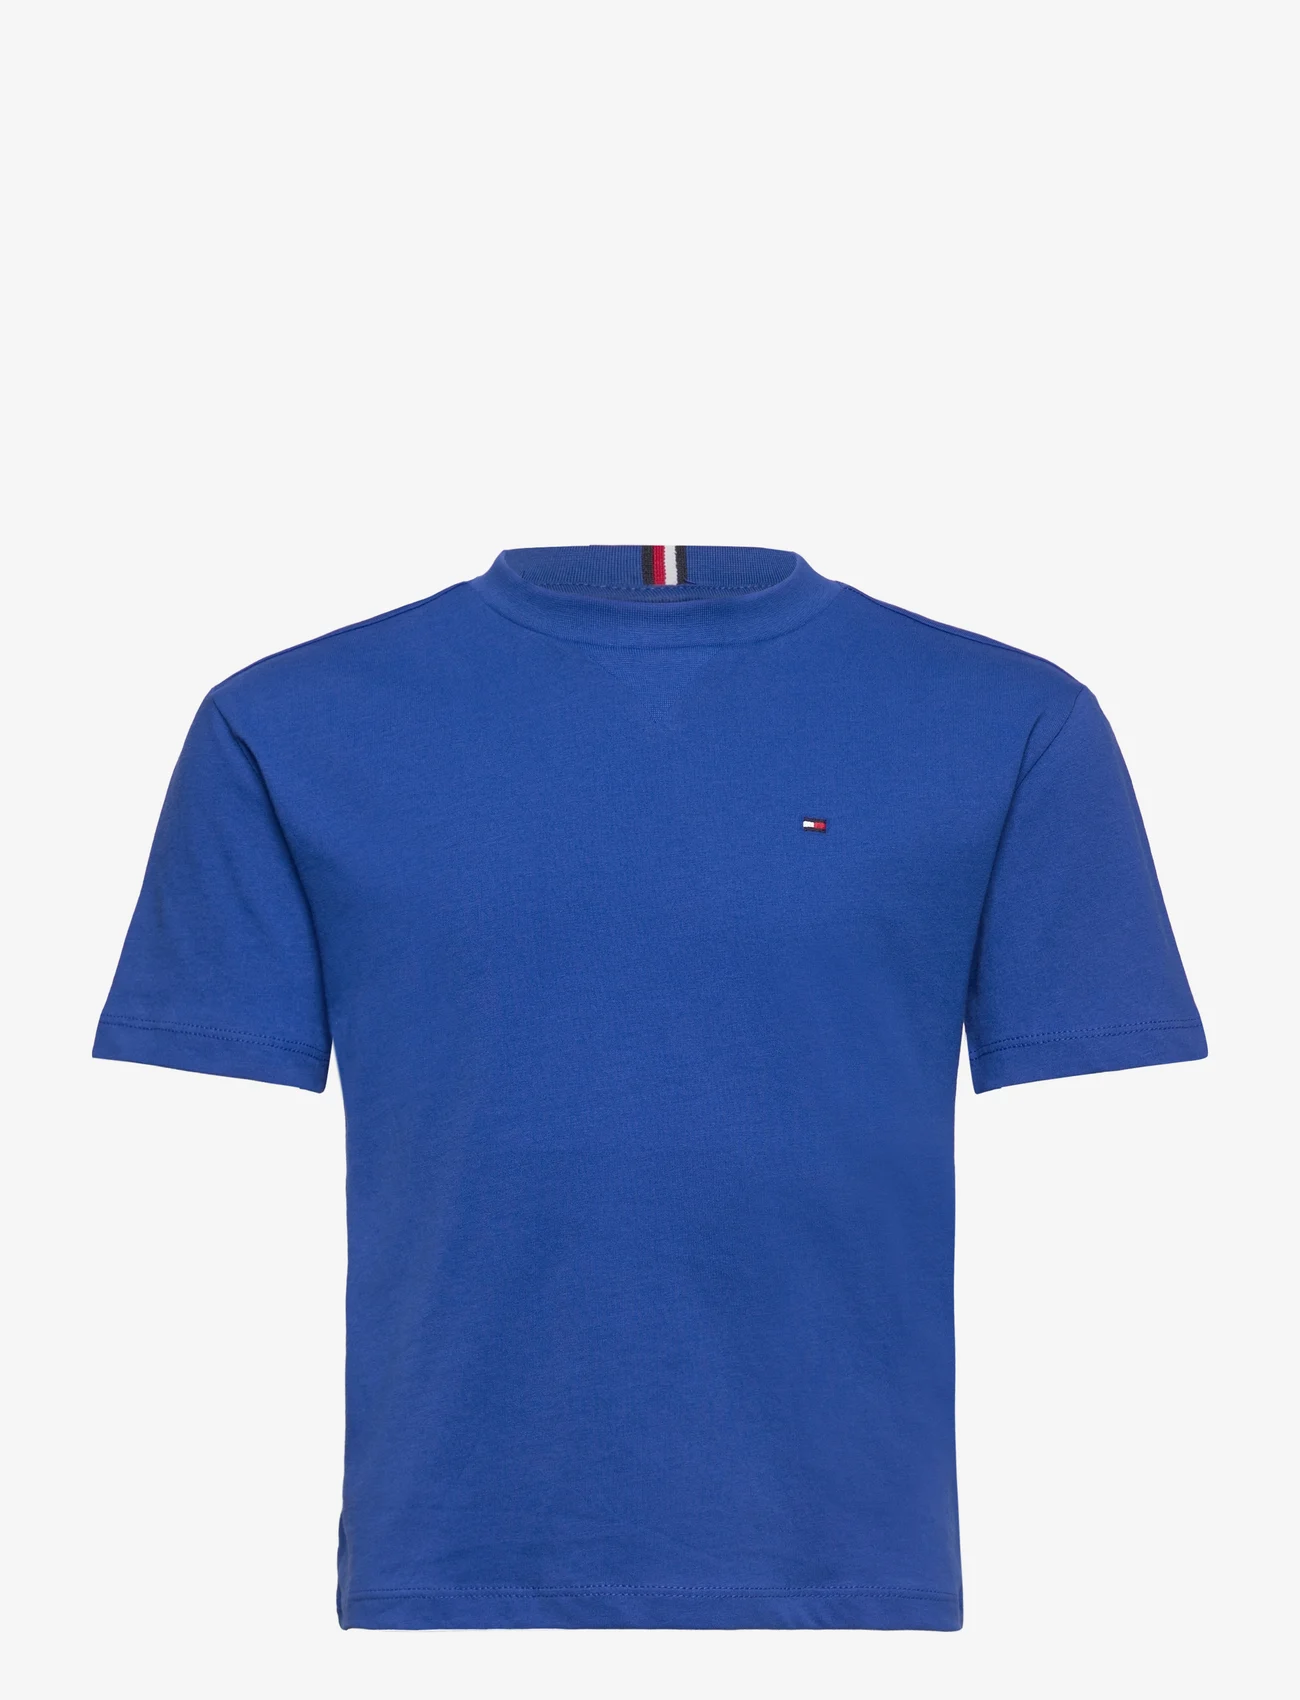 Tommy Hilfiger - ESSENTIAL TEE S/S - kortærmede t-shirts - ultra blue - 0